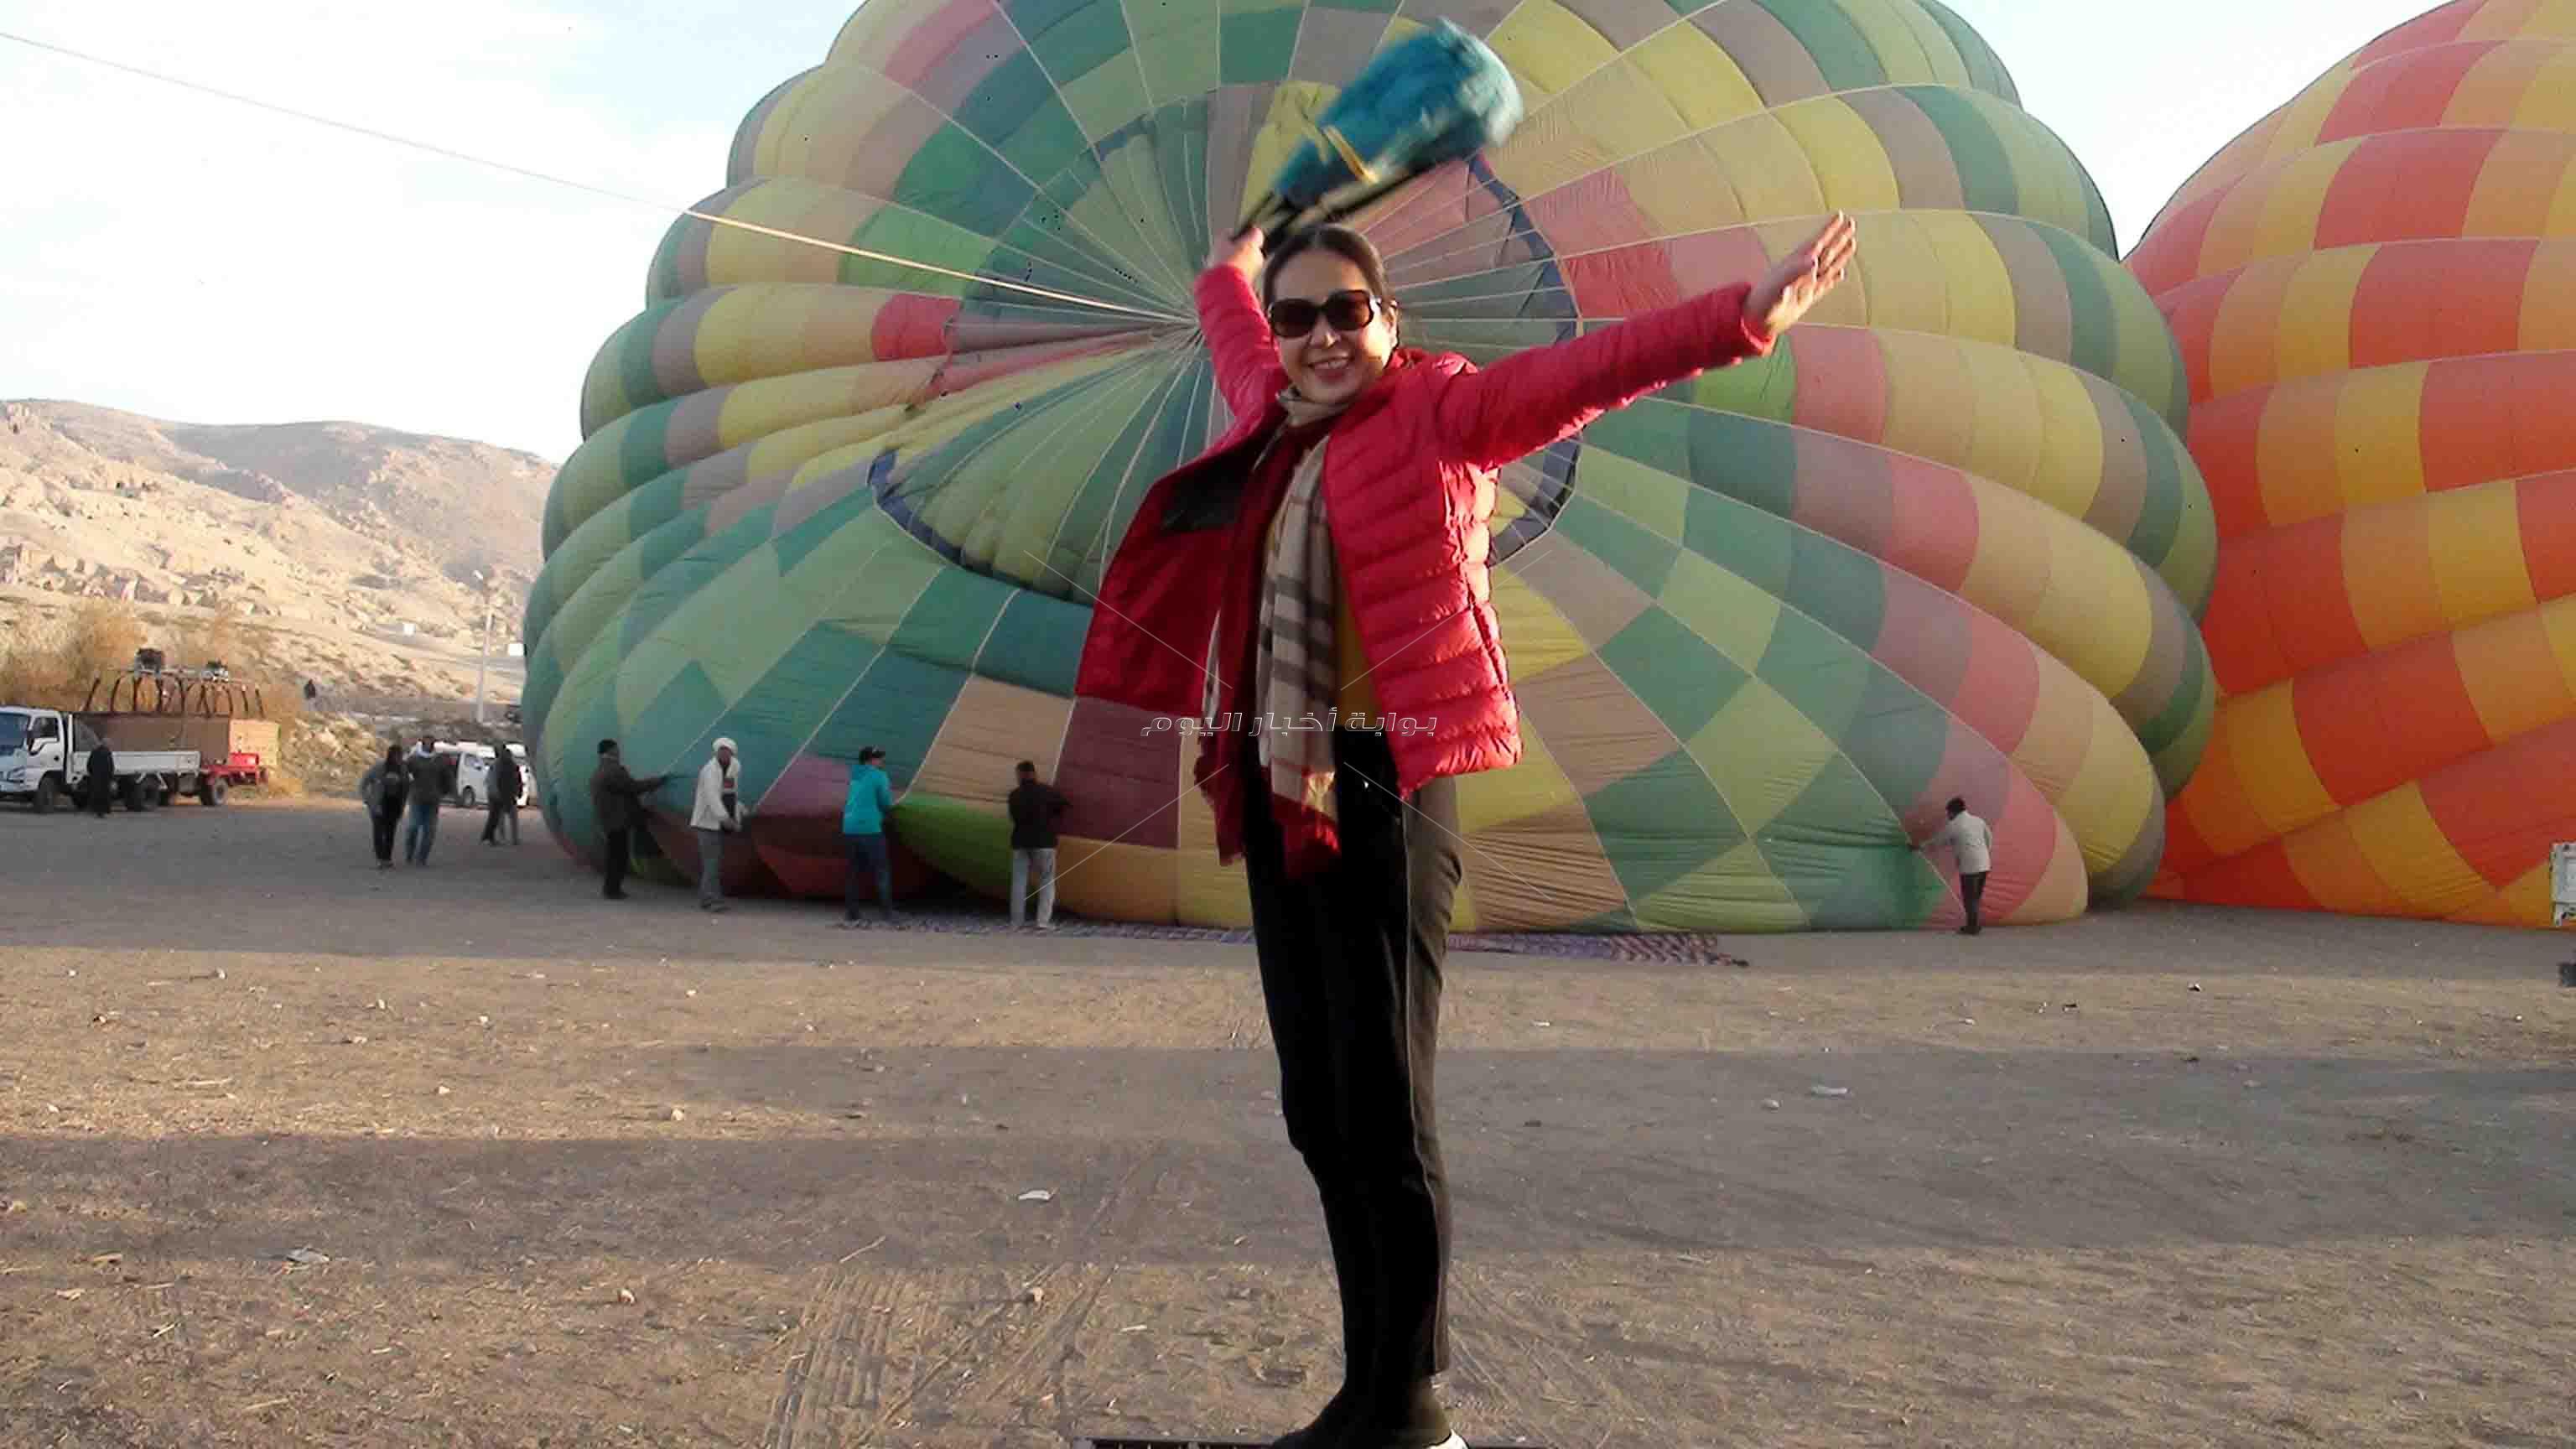 الأقصر تتفرد بين كل المقاصد السياحية المصرية بوجود رحلات البالون الطائر فى سمائها